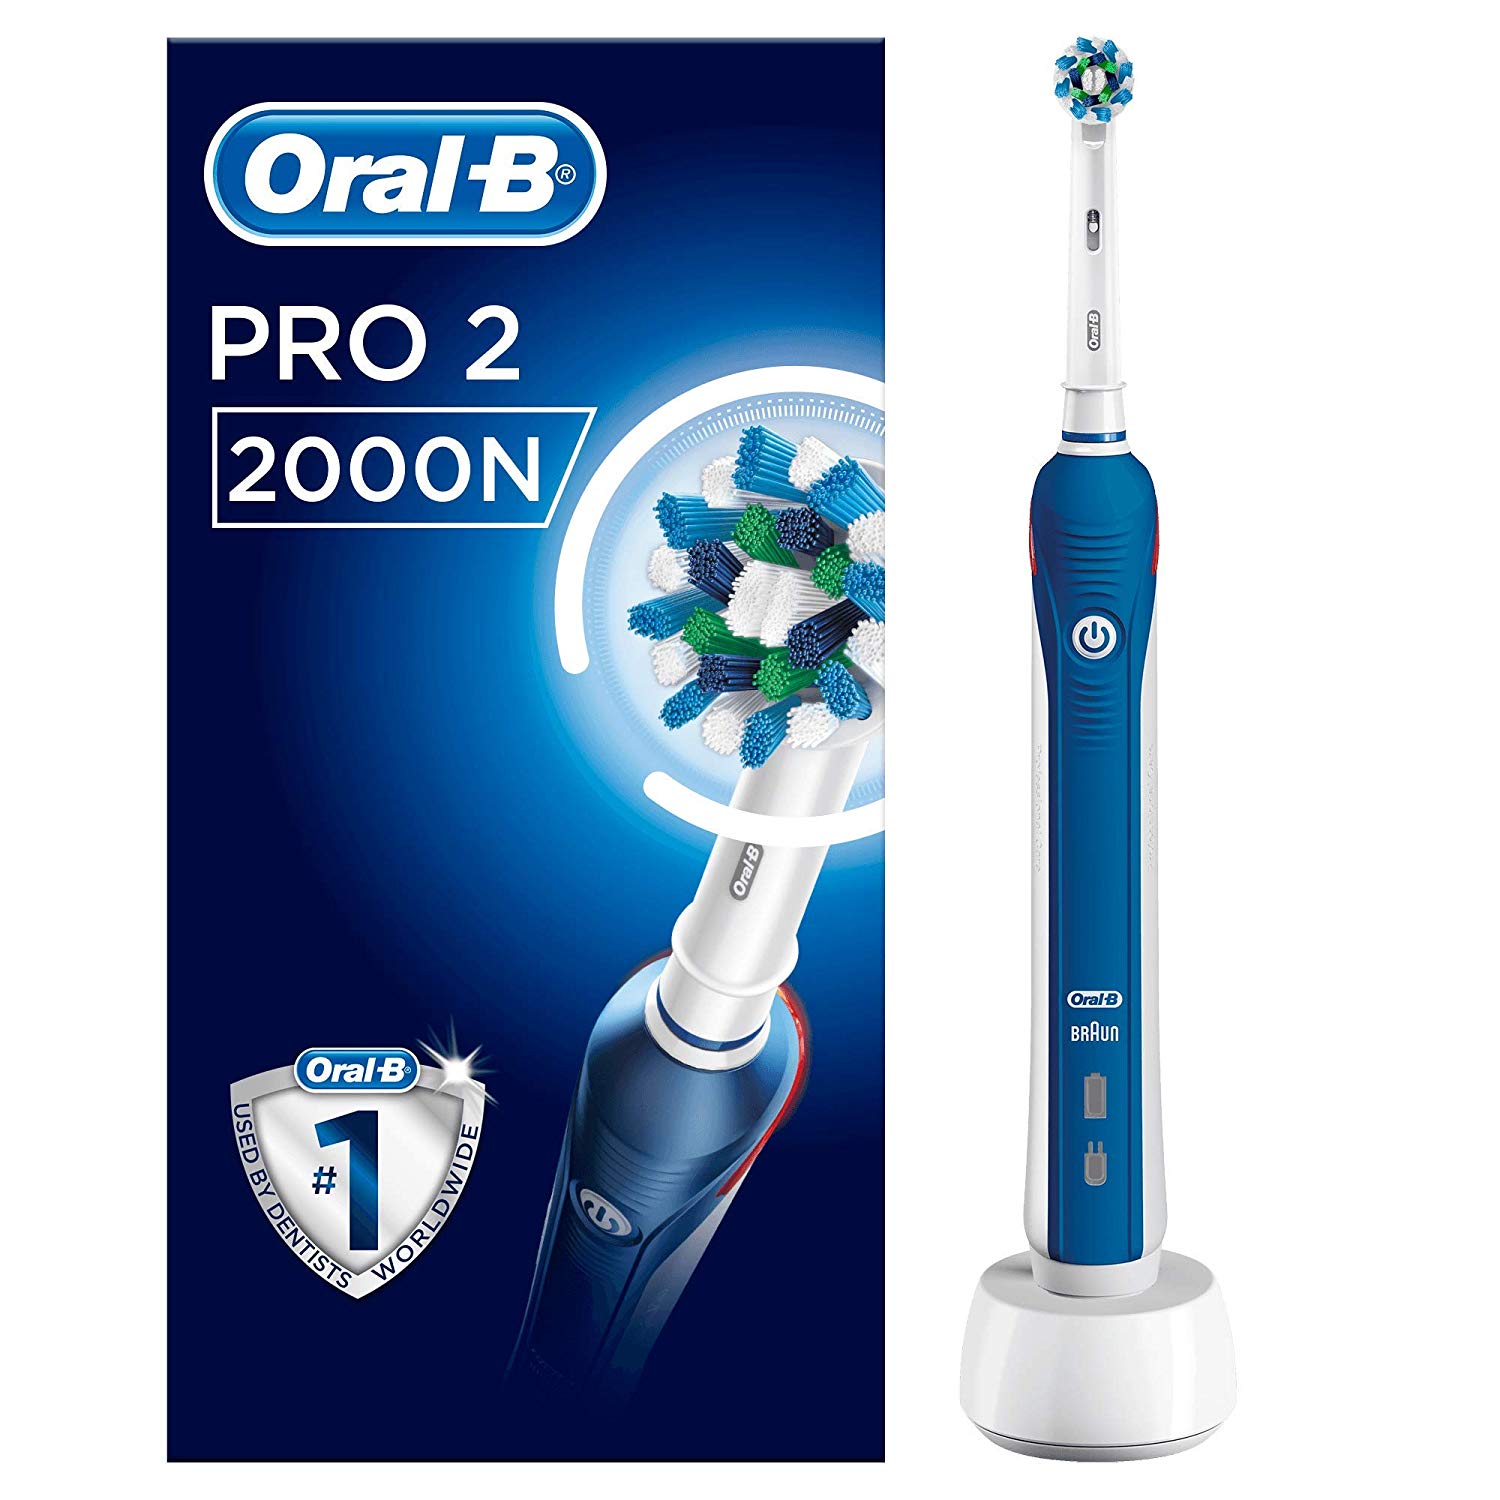 Brosse à dents électrique Oral-B PRO 2 2000N CrossAction à 45,07€ @ Amazon